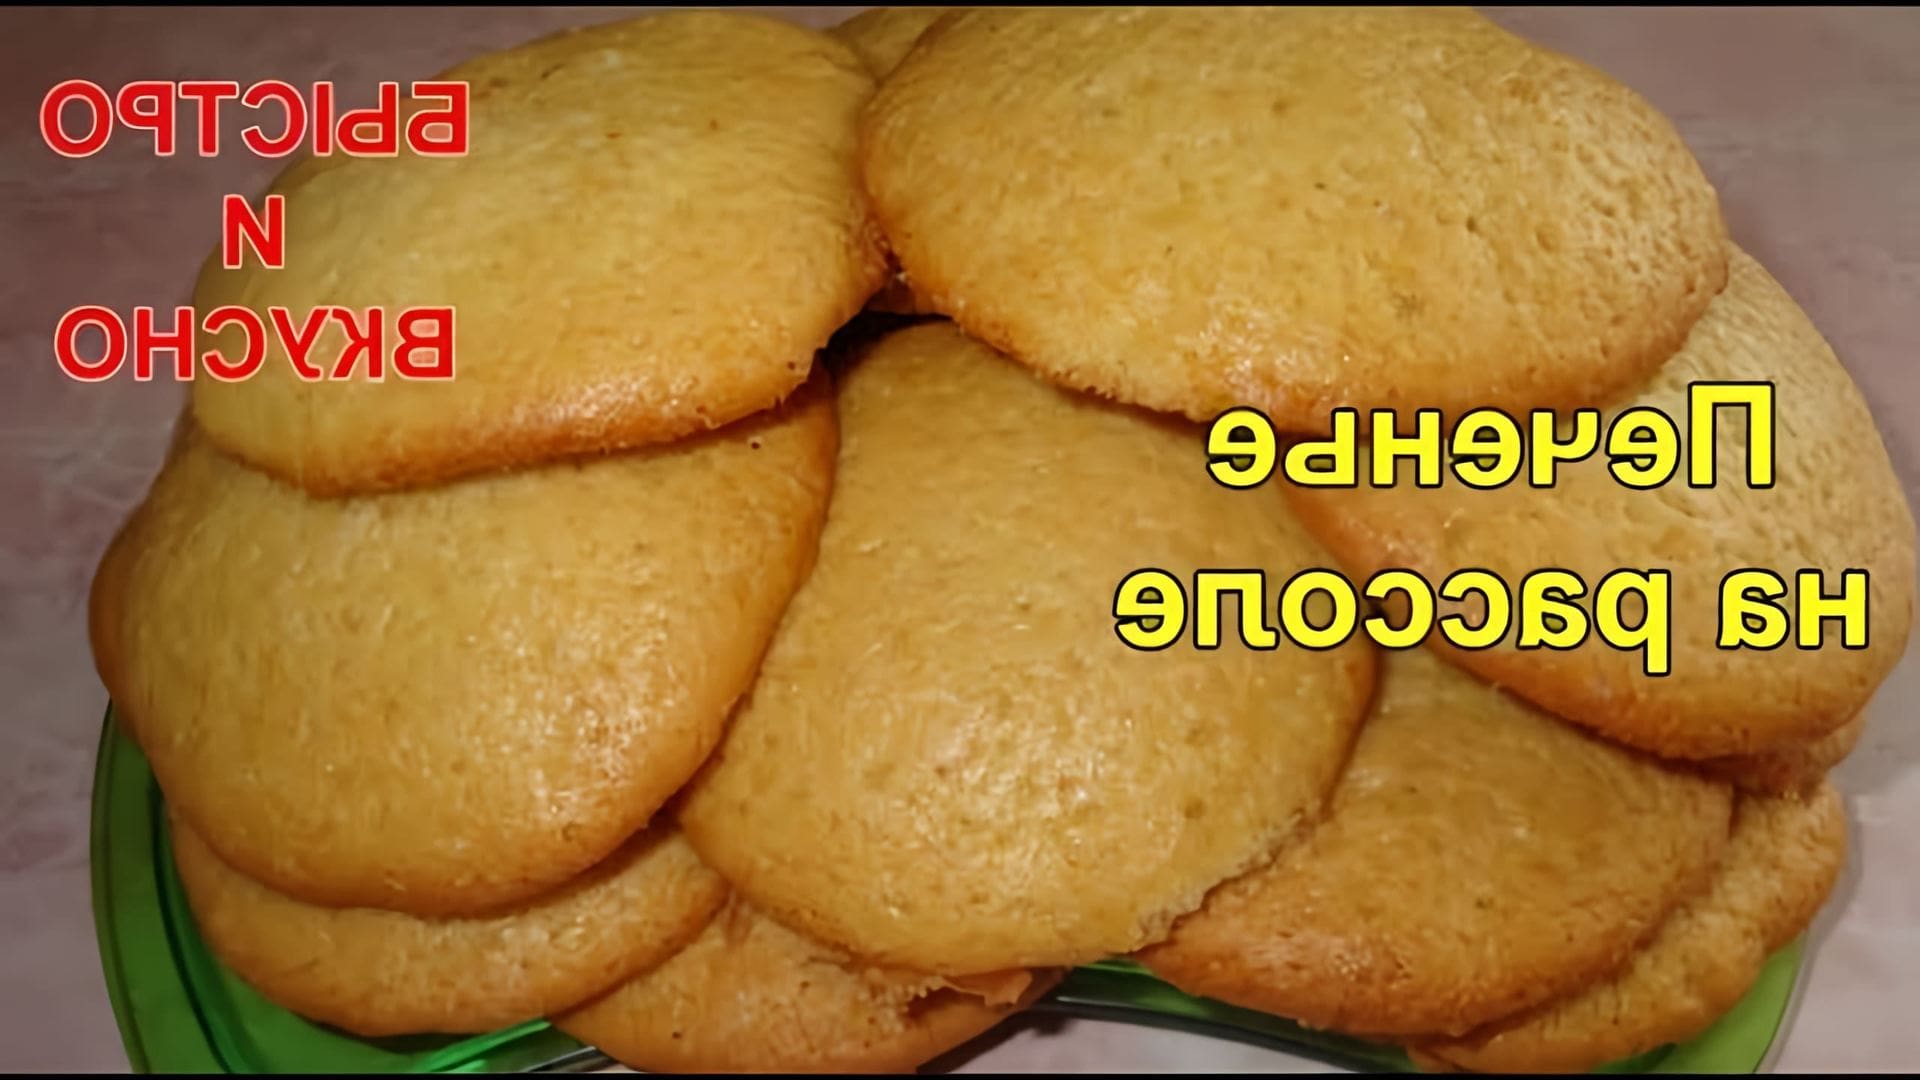 В этом видео демонстрируется рецепт приготовления печенья на рассоле из помидор или спада гуртов